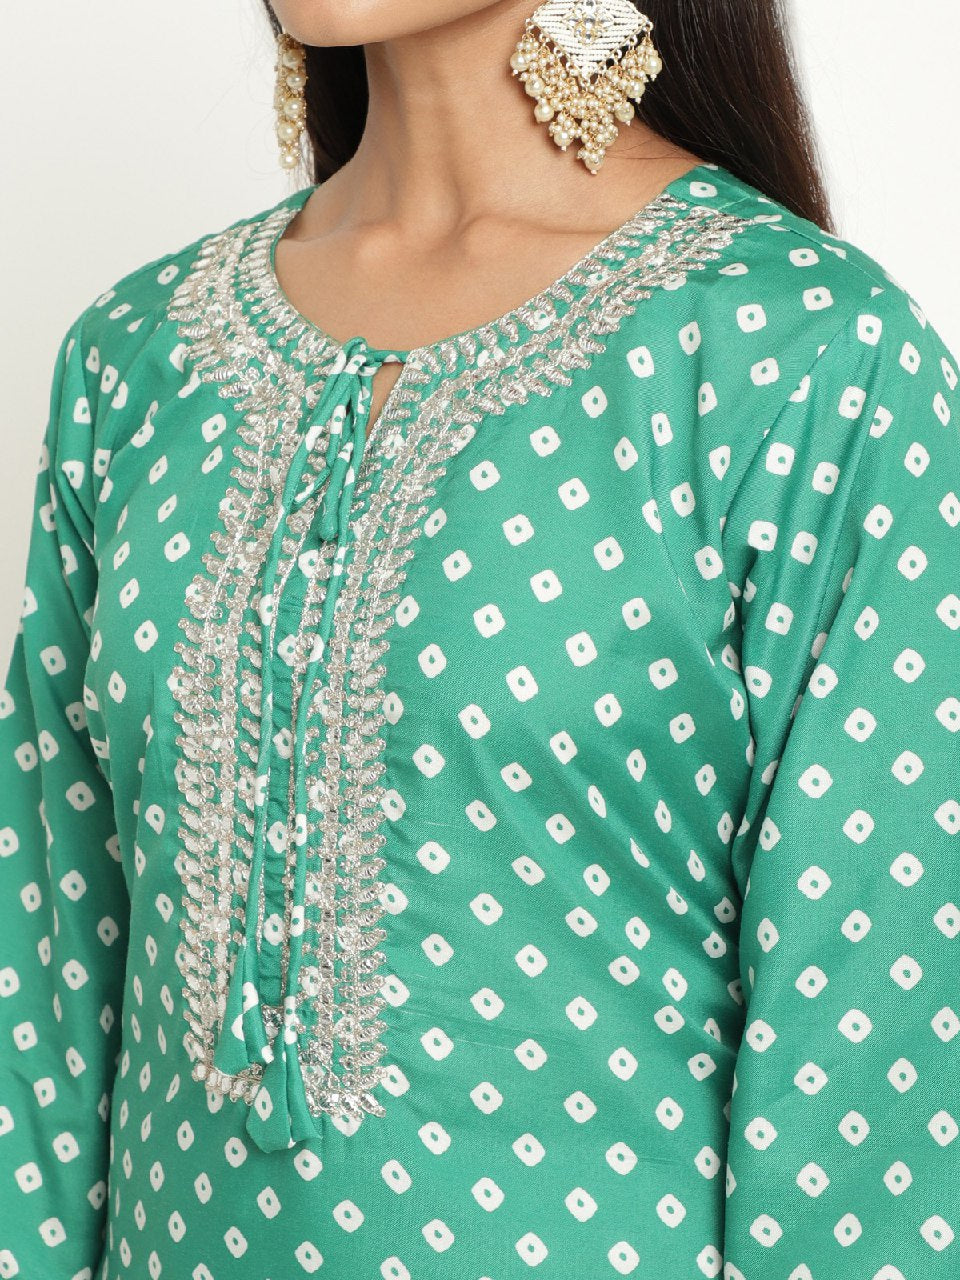 Cotton Party wear Women's Kurta Pant with Dupatta Suit Green mahezon